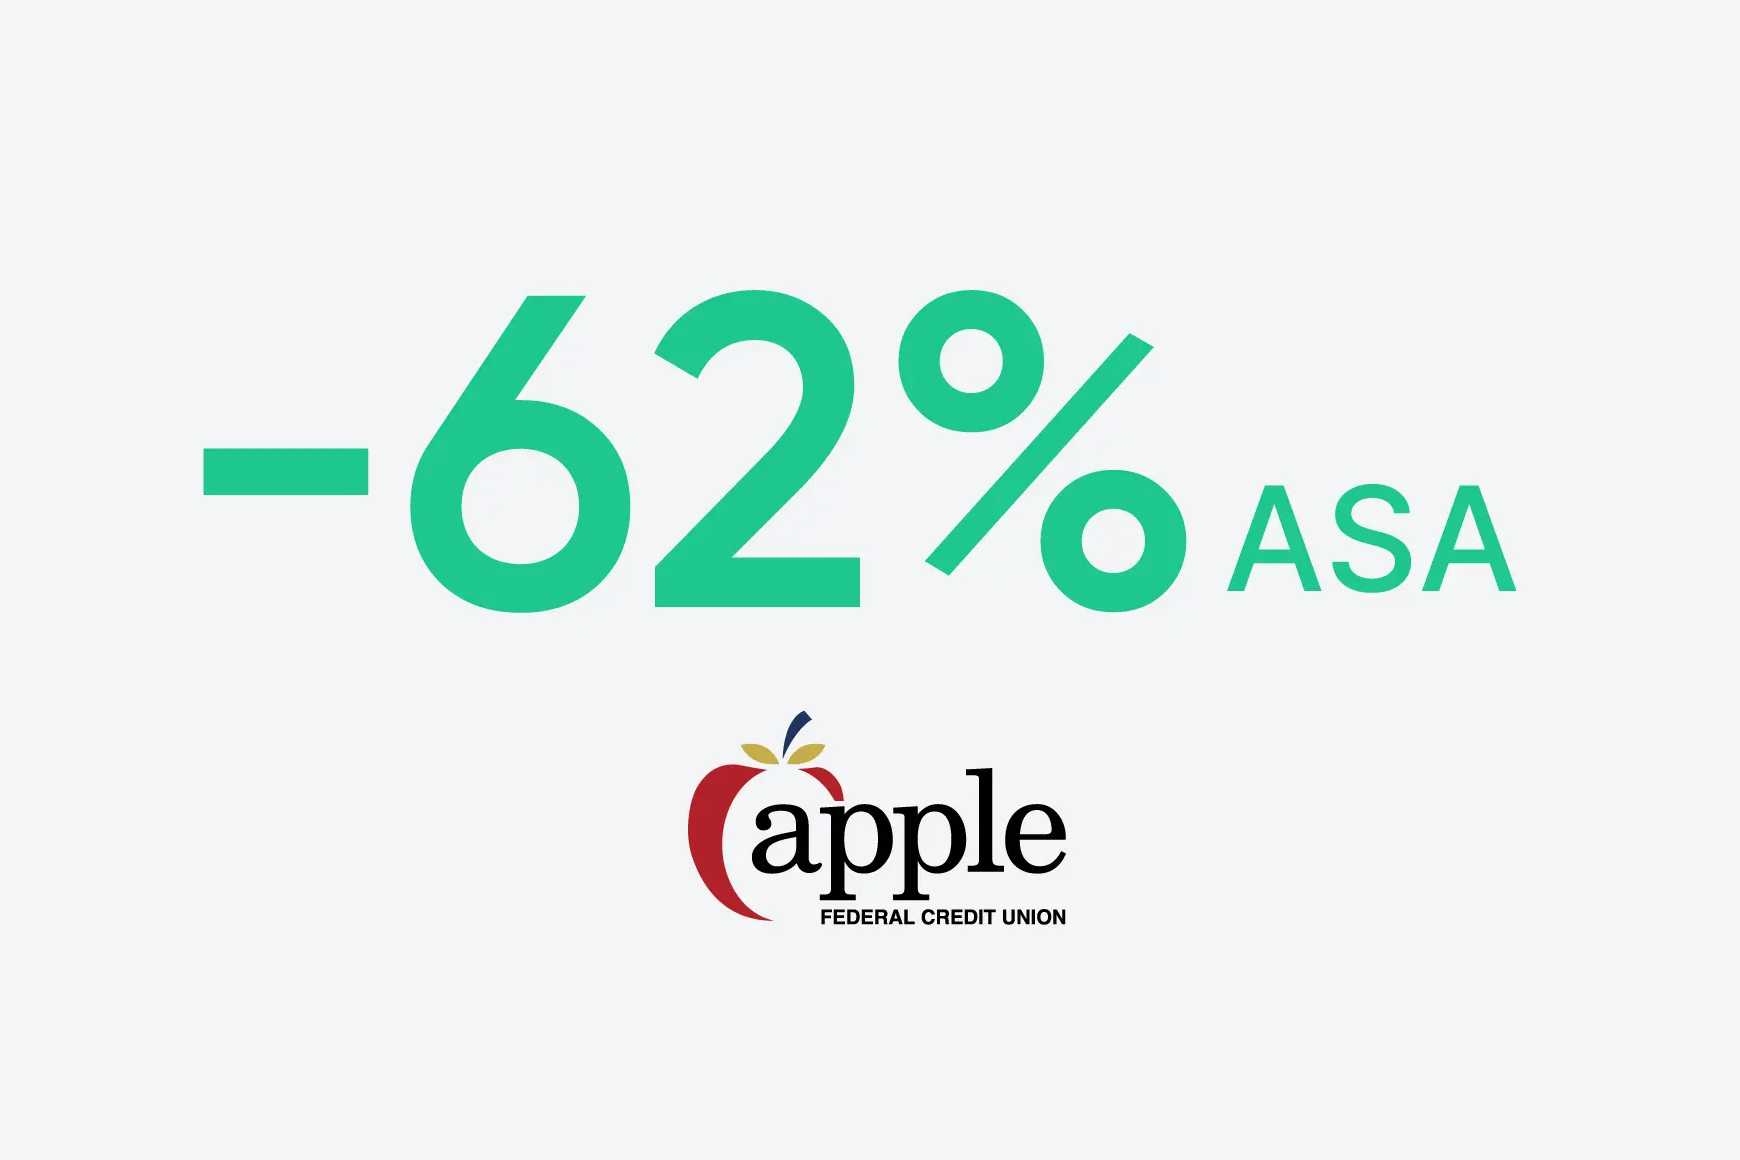 Apple Federal Credit Union a réduit l'ASA de 62 %.